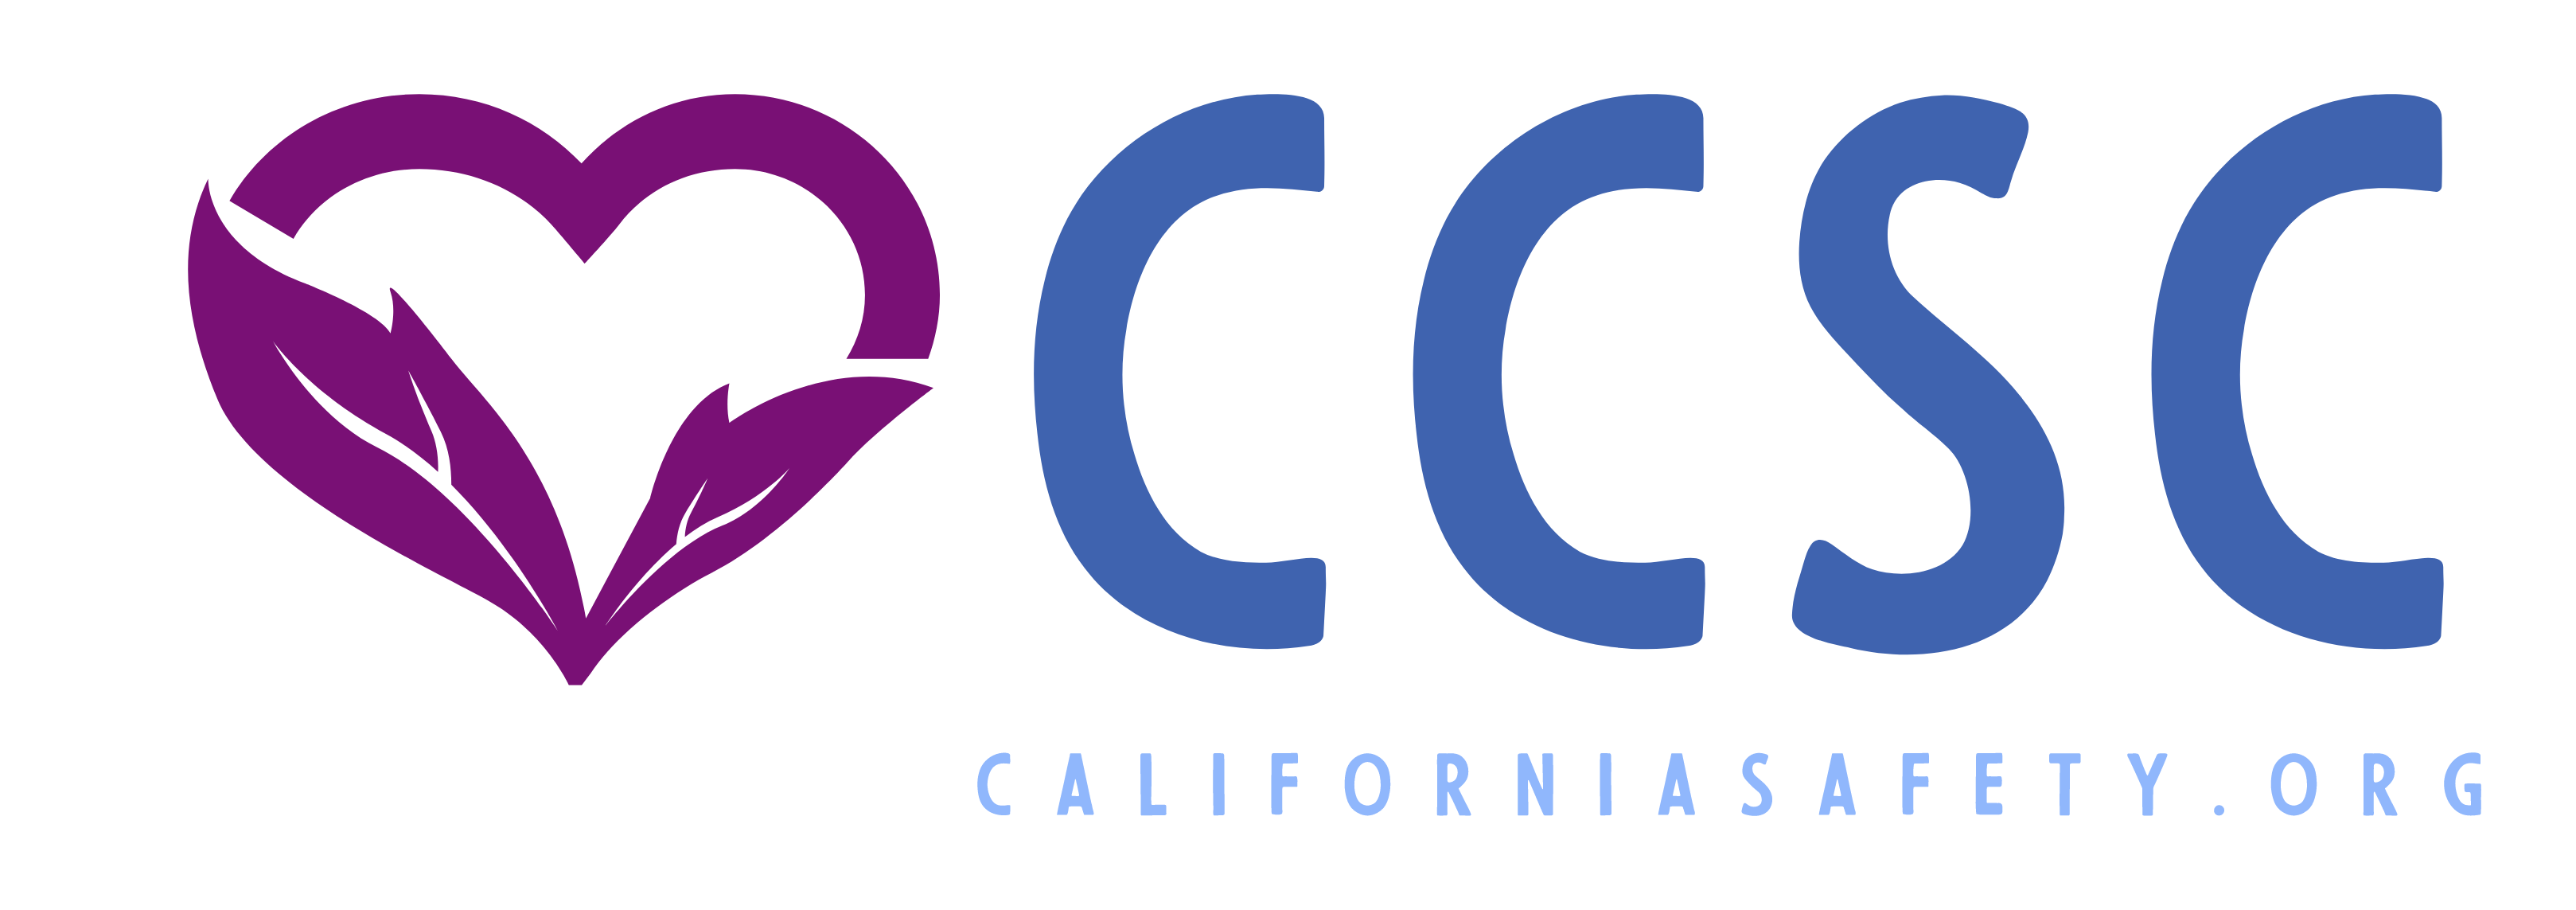 The Central California Safety Council Logo